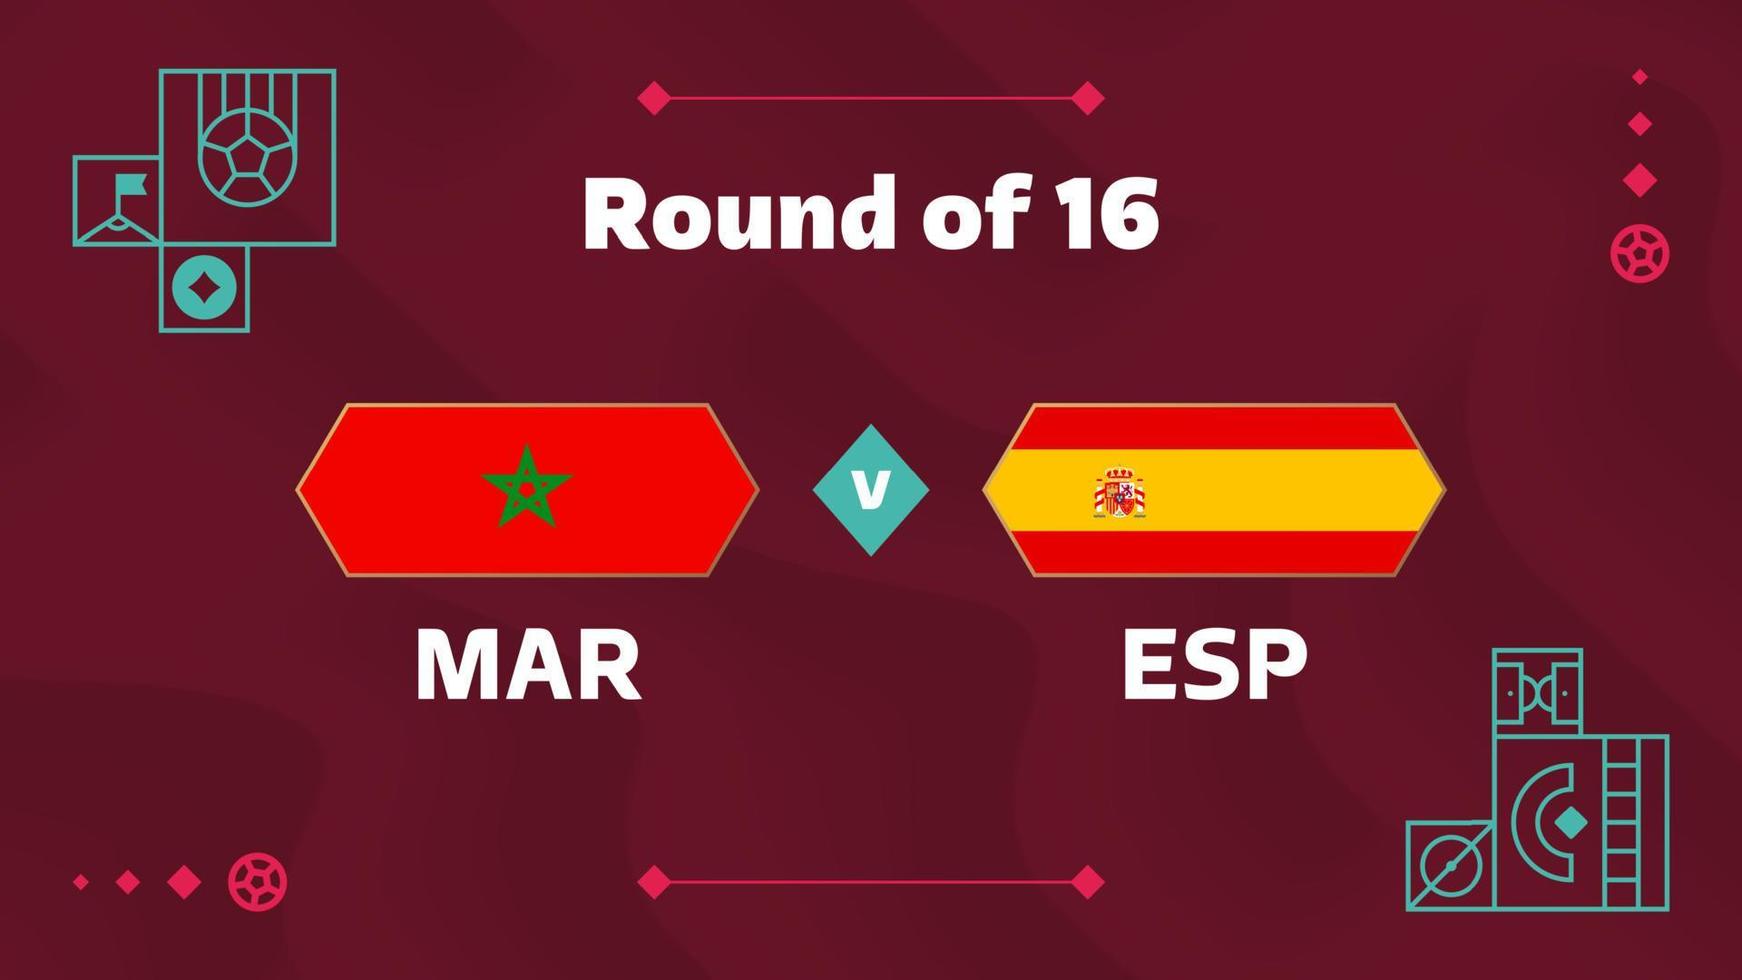 Marocco Spagna spareggio il giro di 16 incontro calcio 2022. 2022 mondo calcio campionato incontro contro squadre intro sport sfondo, campionato concorrenza manifesto, vettore illustrazione